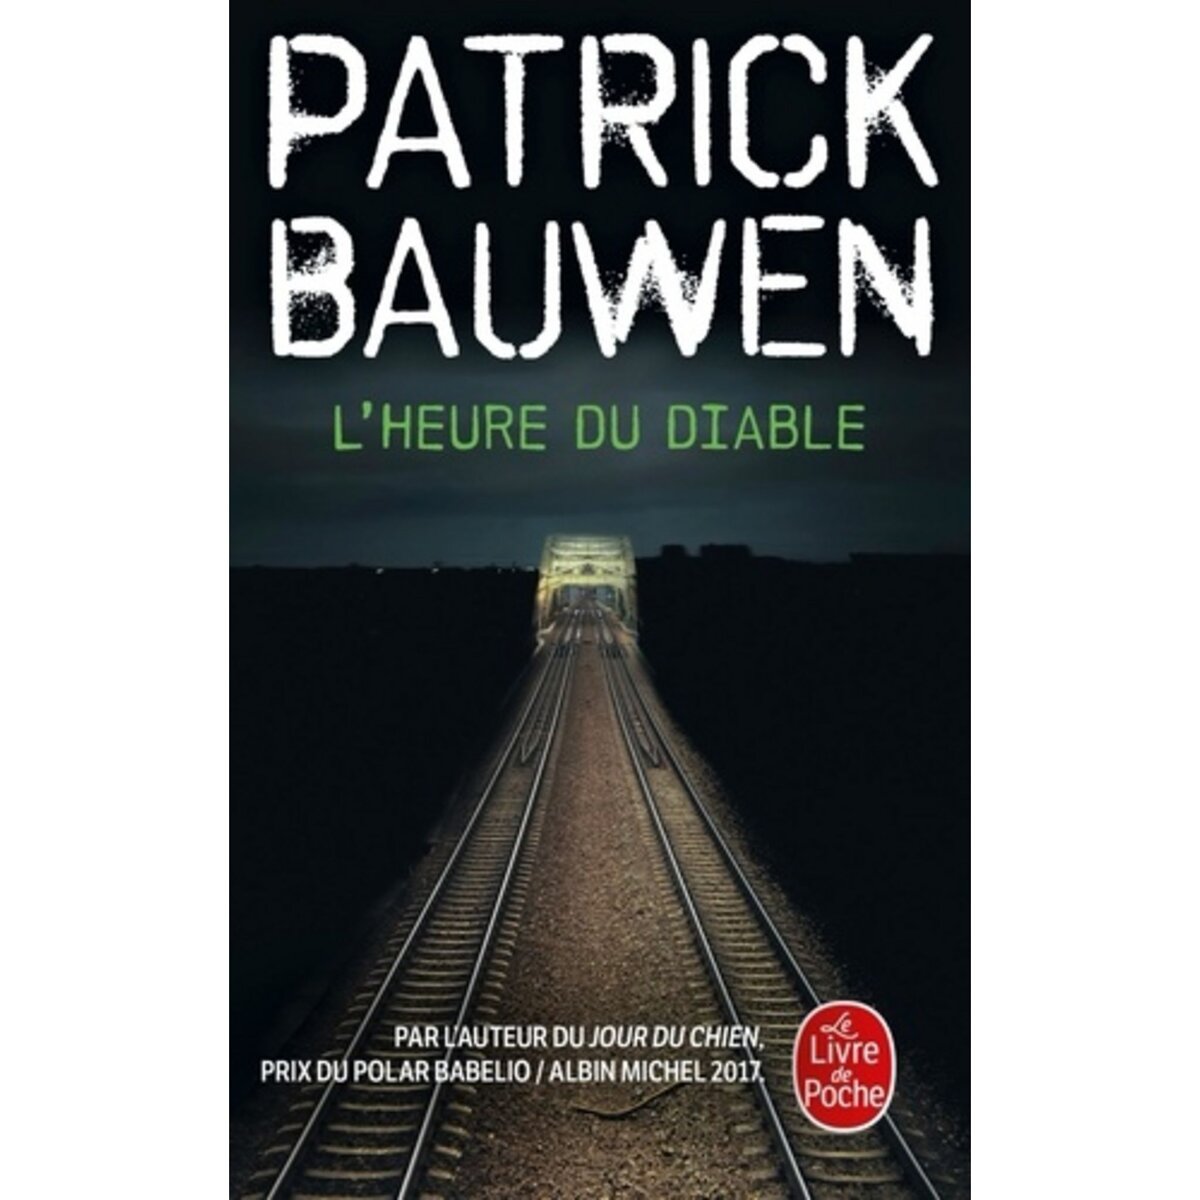  L'HEURE DU DIABLE, Bauwen Patrick